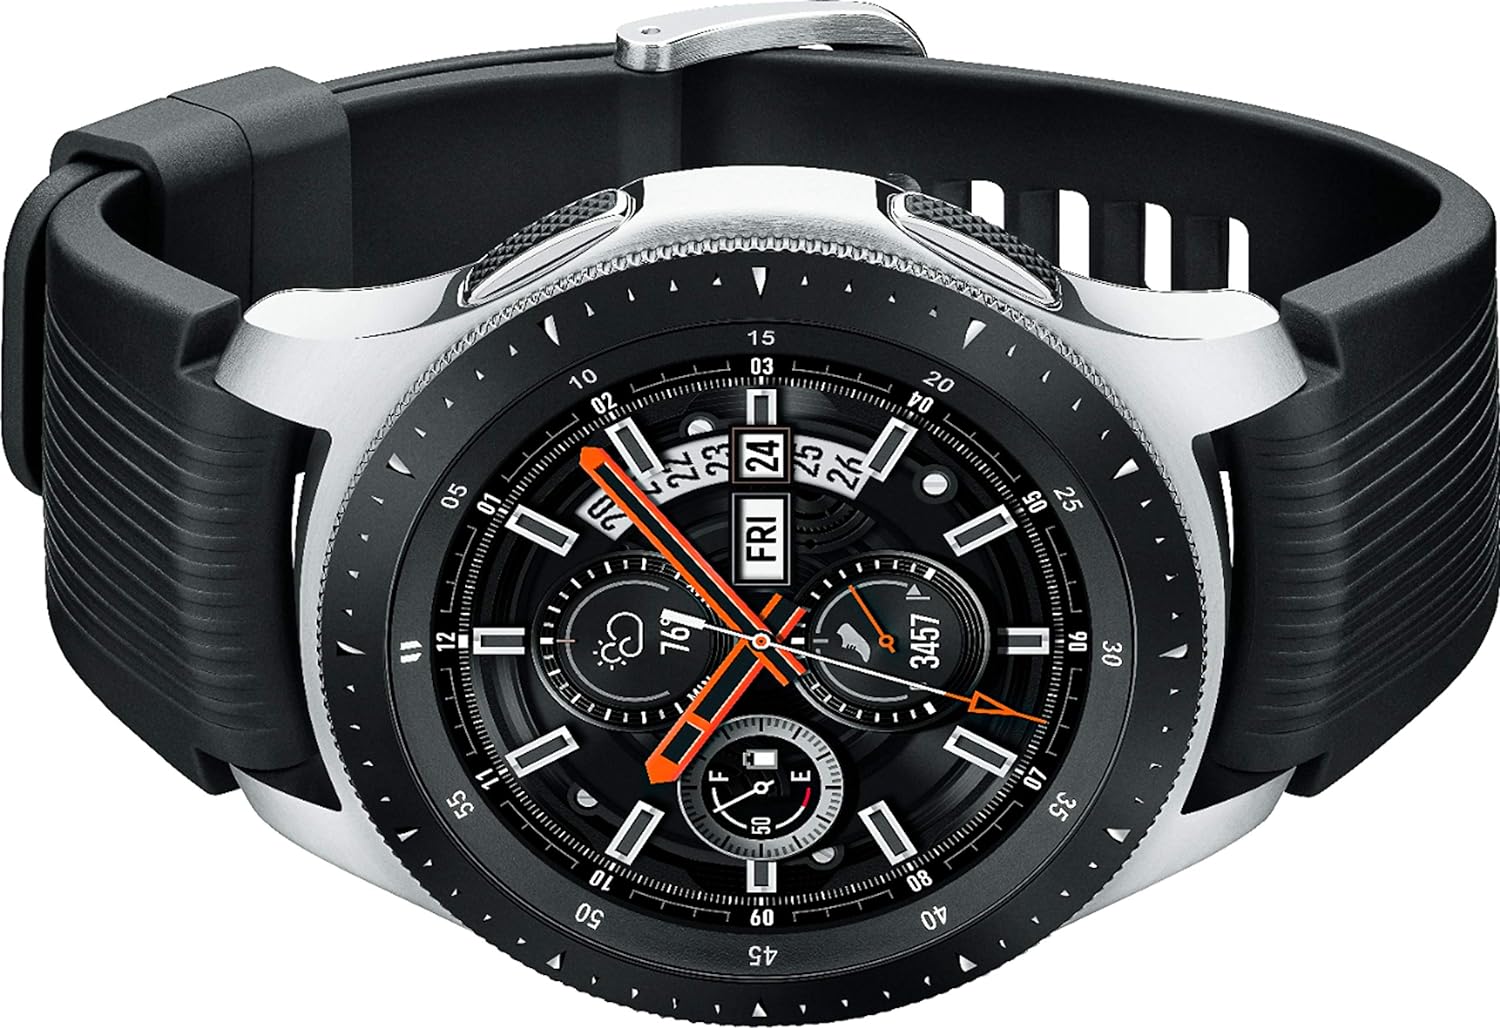 Samsung Galaxy Watch Smartwatch 46mm Stainless Steel - Silver - SM-R800NZSAXAR